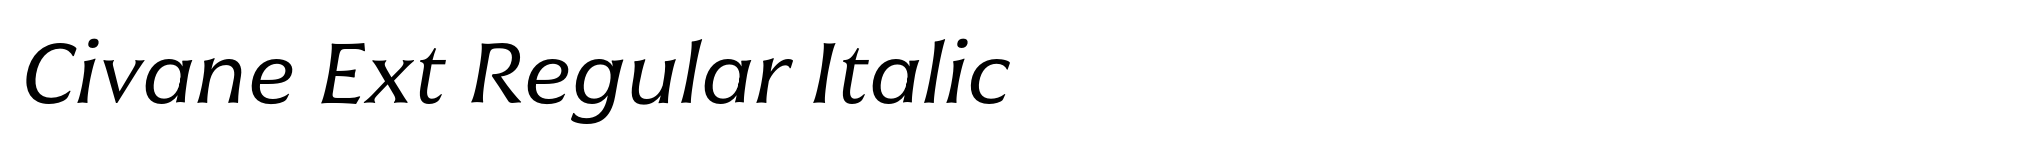 Civane Ext Regular Italic image